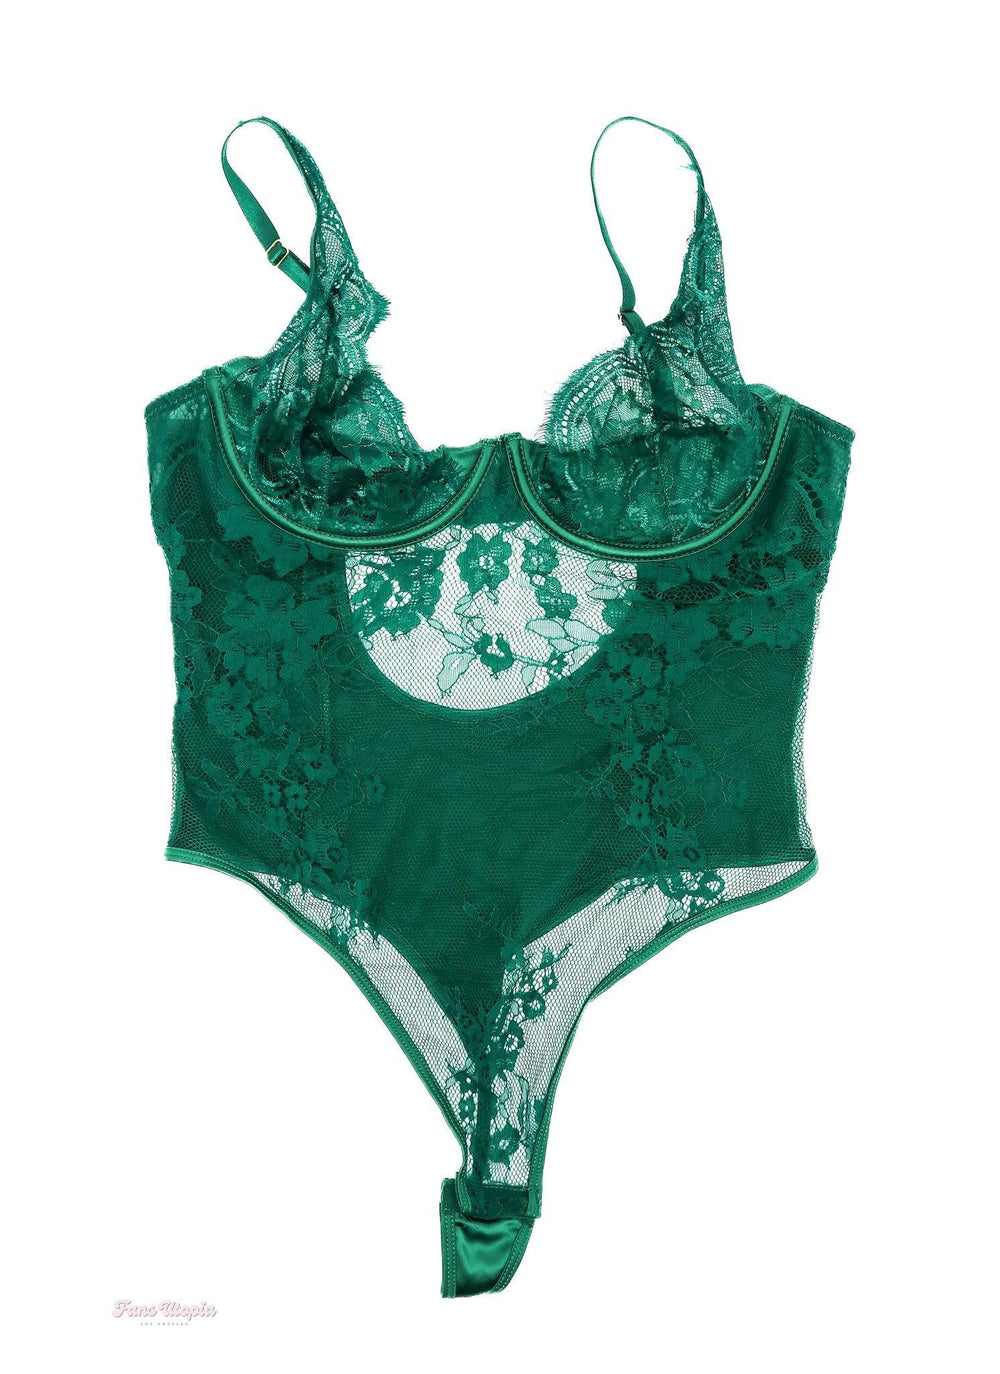 Cherie DeVille Emerald Lace Bodysuit + Signed Polaroid - FANS UTOPIA